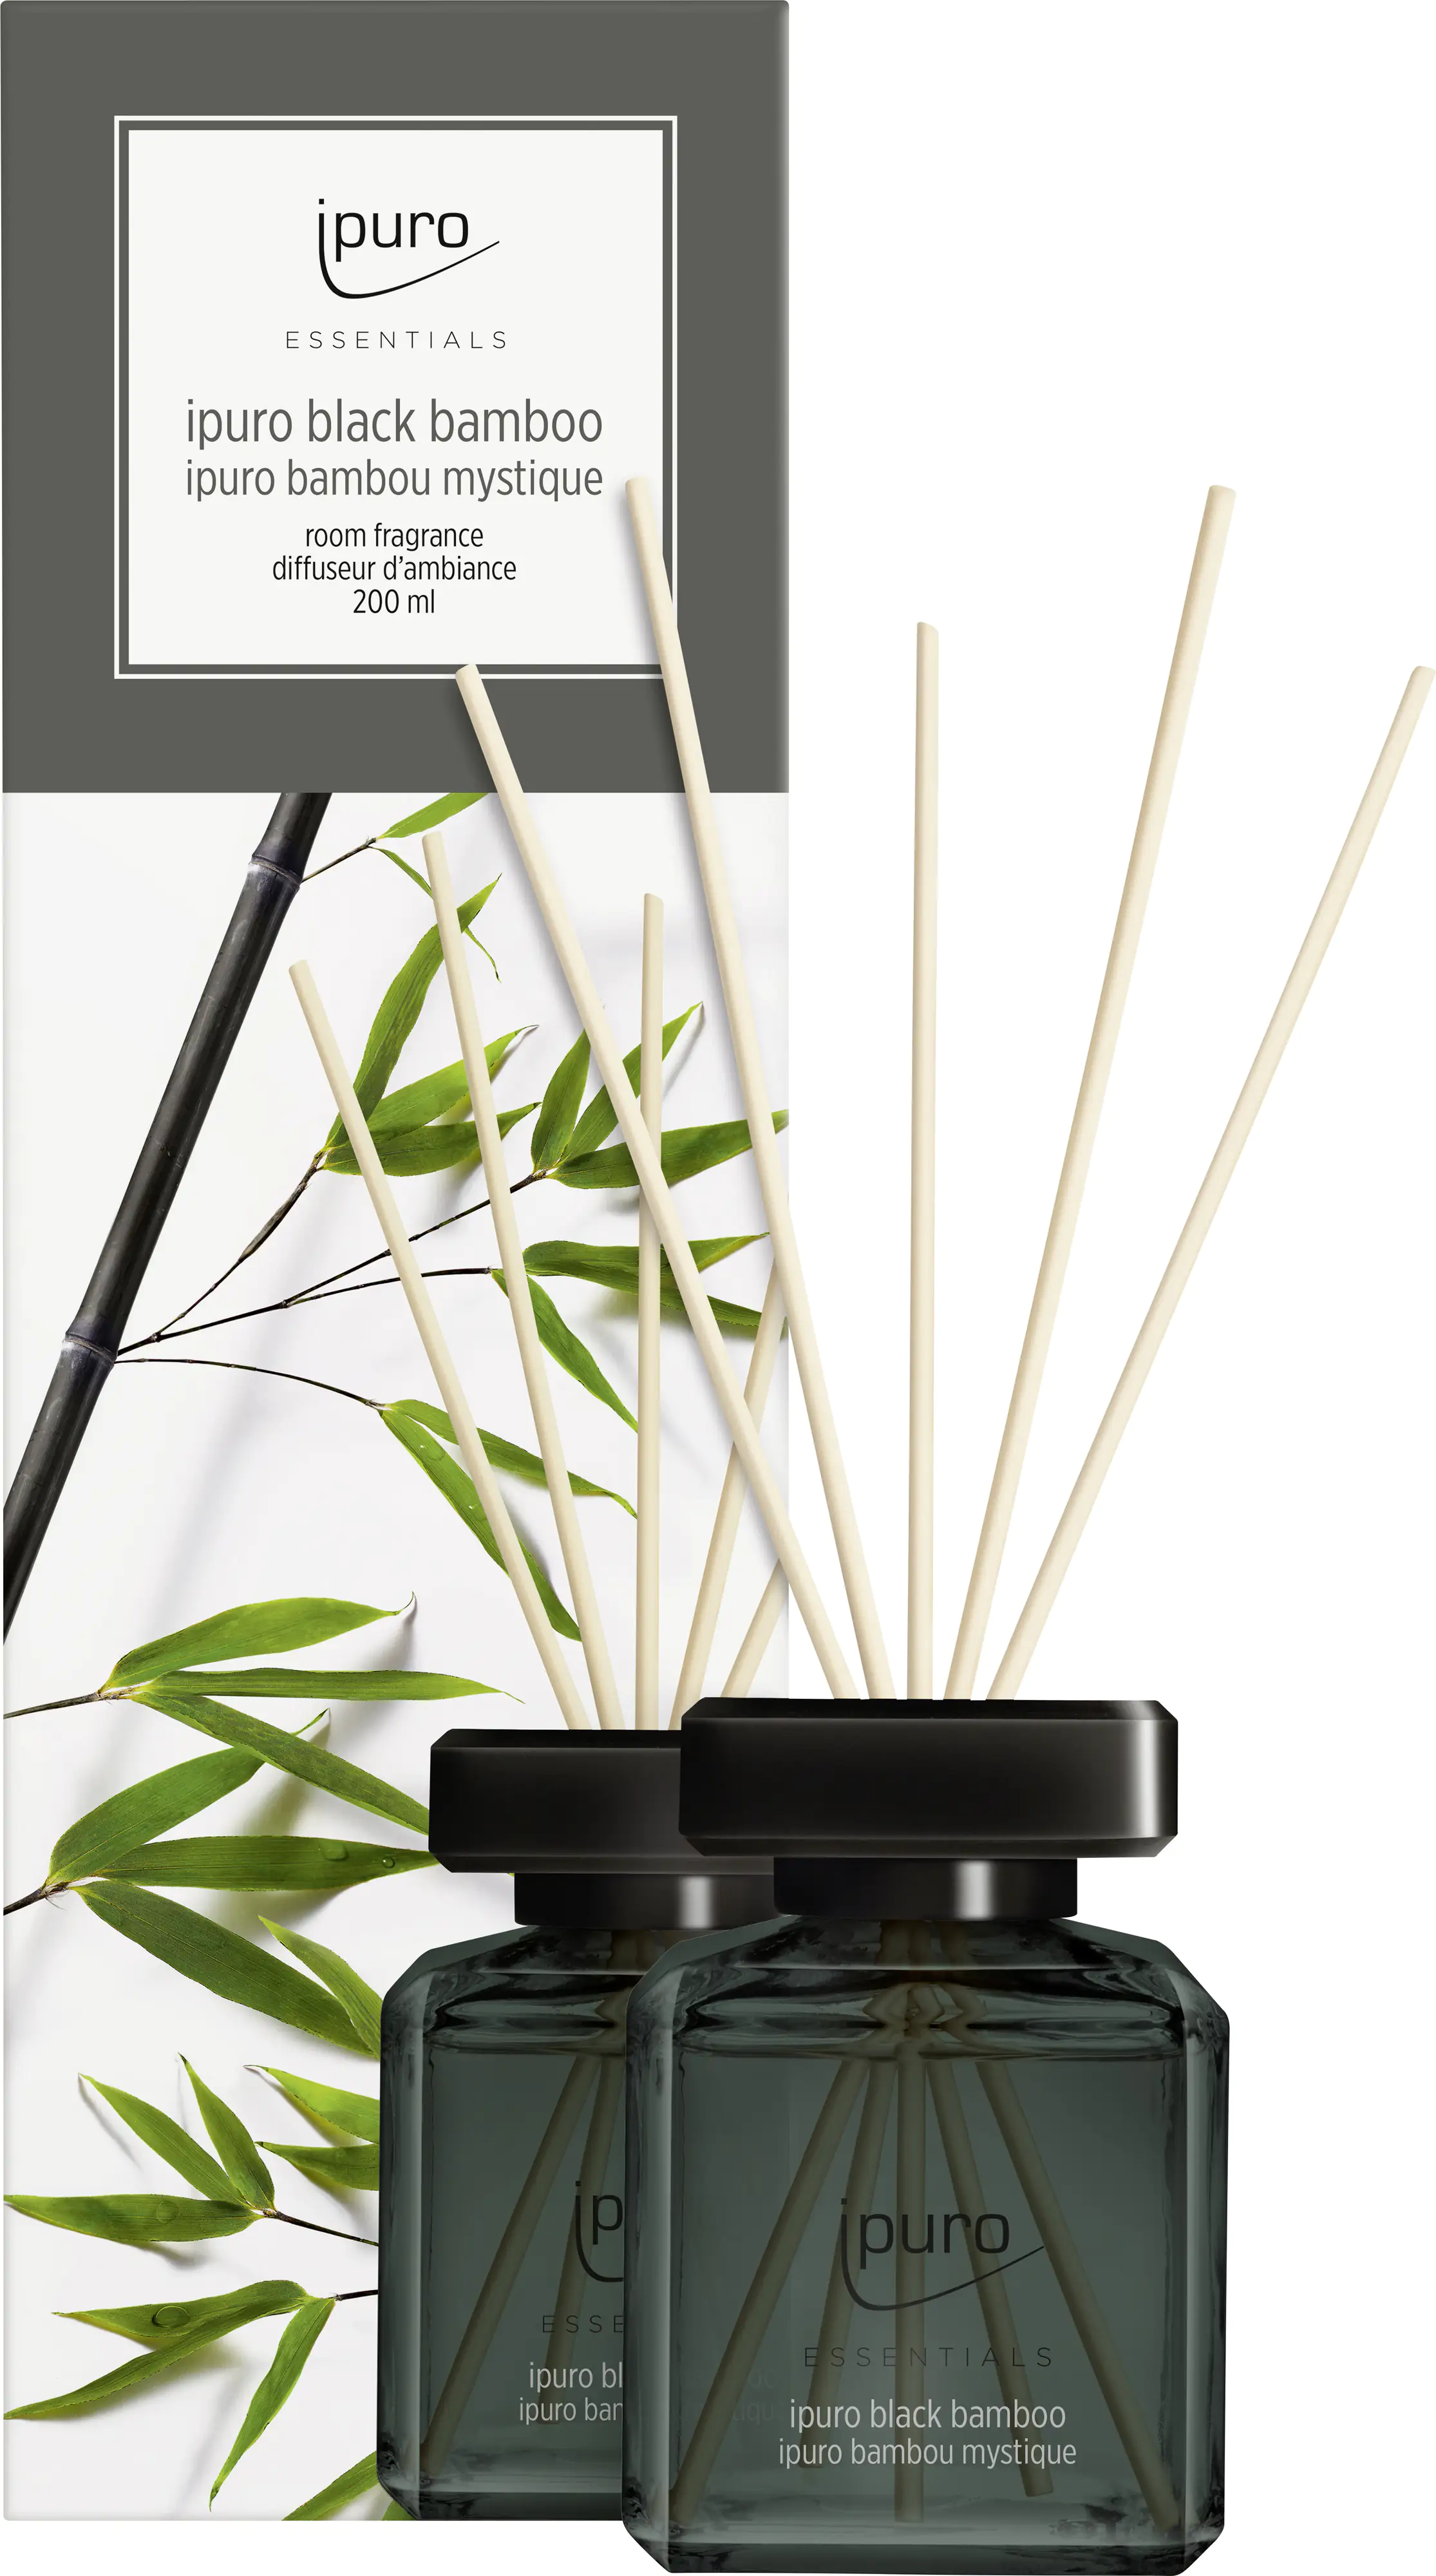 ipuro ESSENTIALS Raumduft Black Bamboo 200 ml kaufen